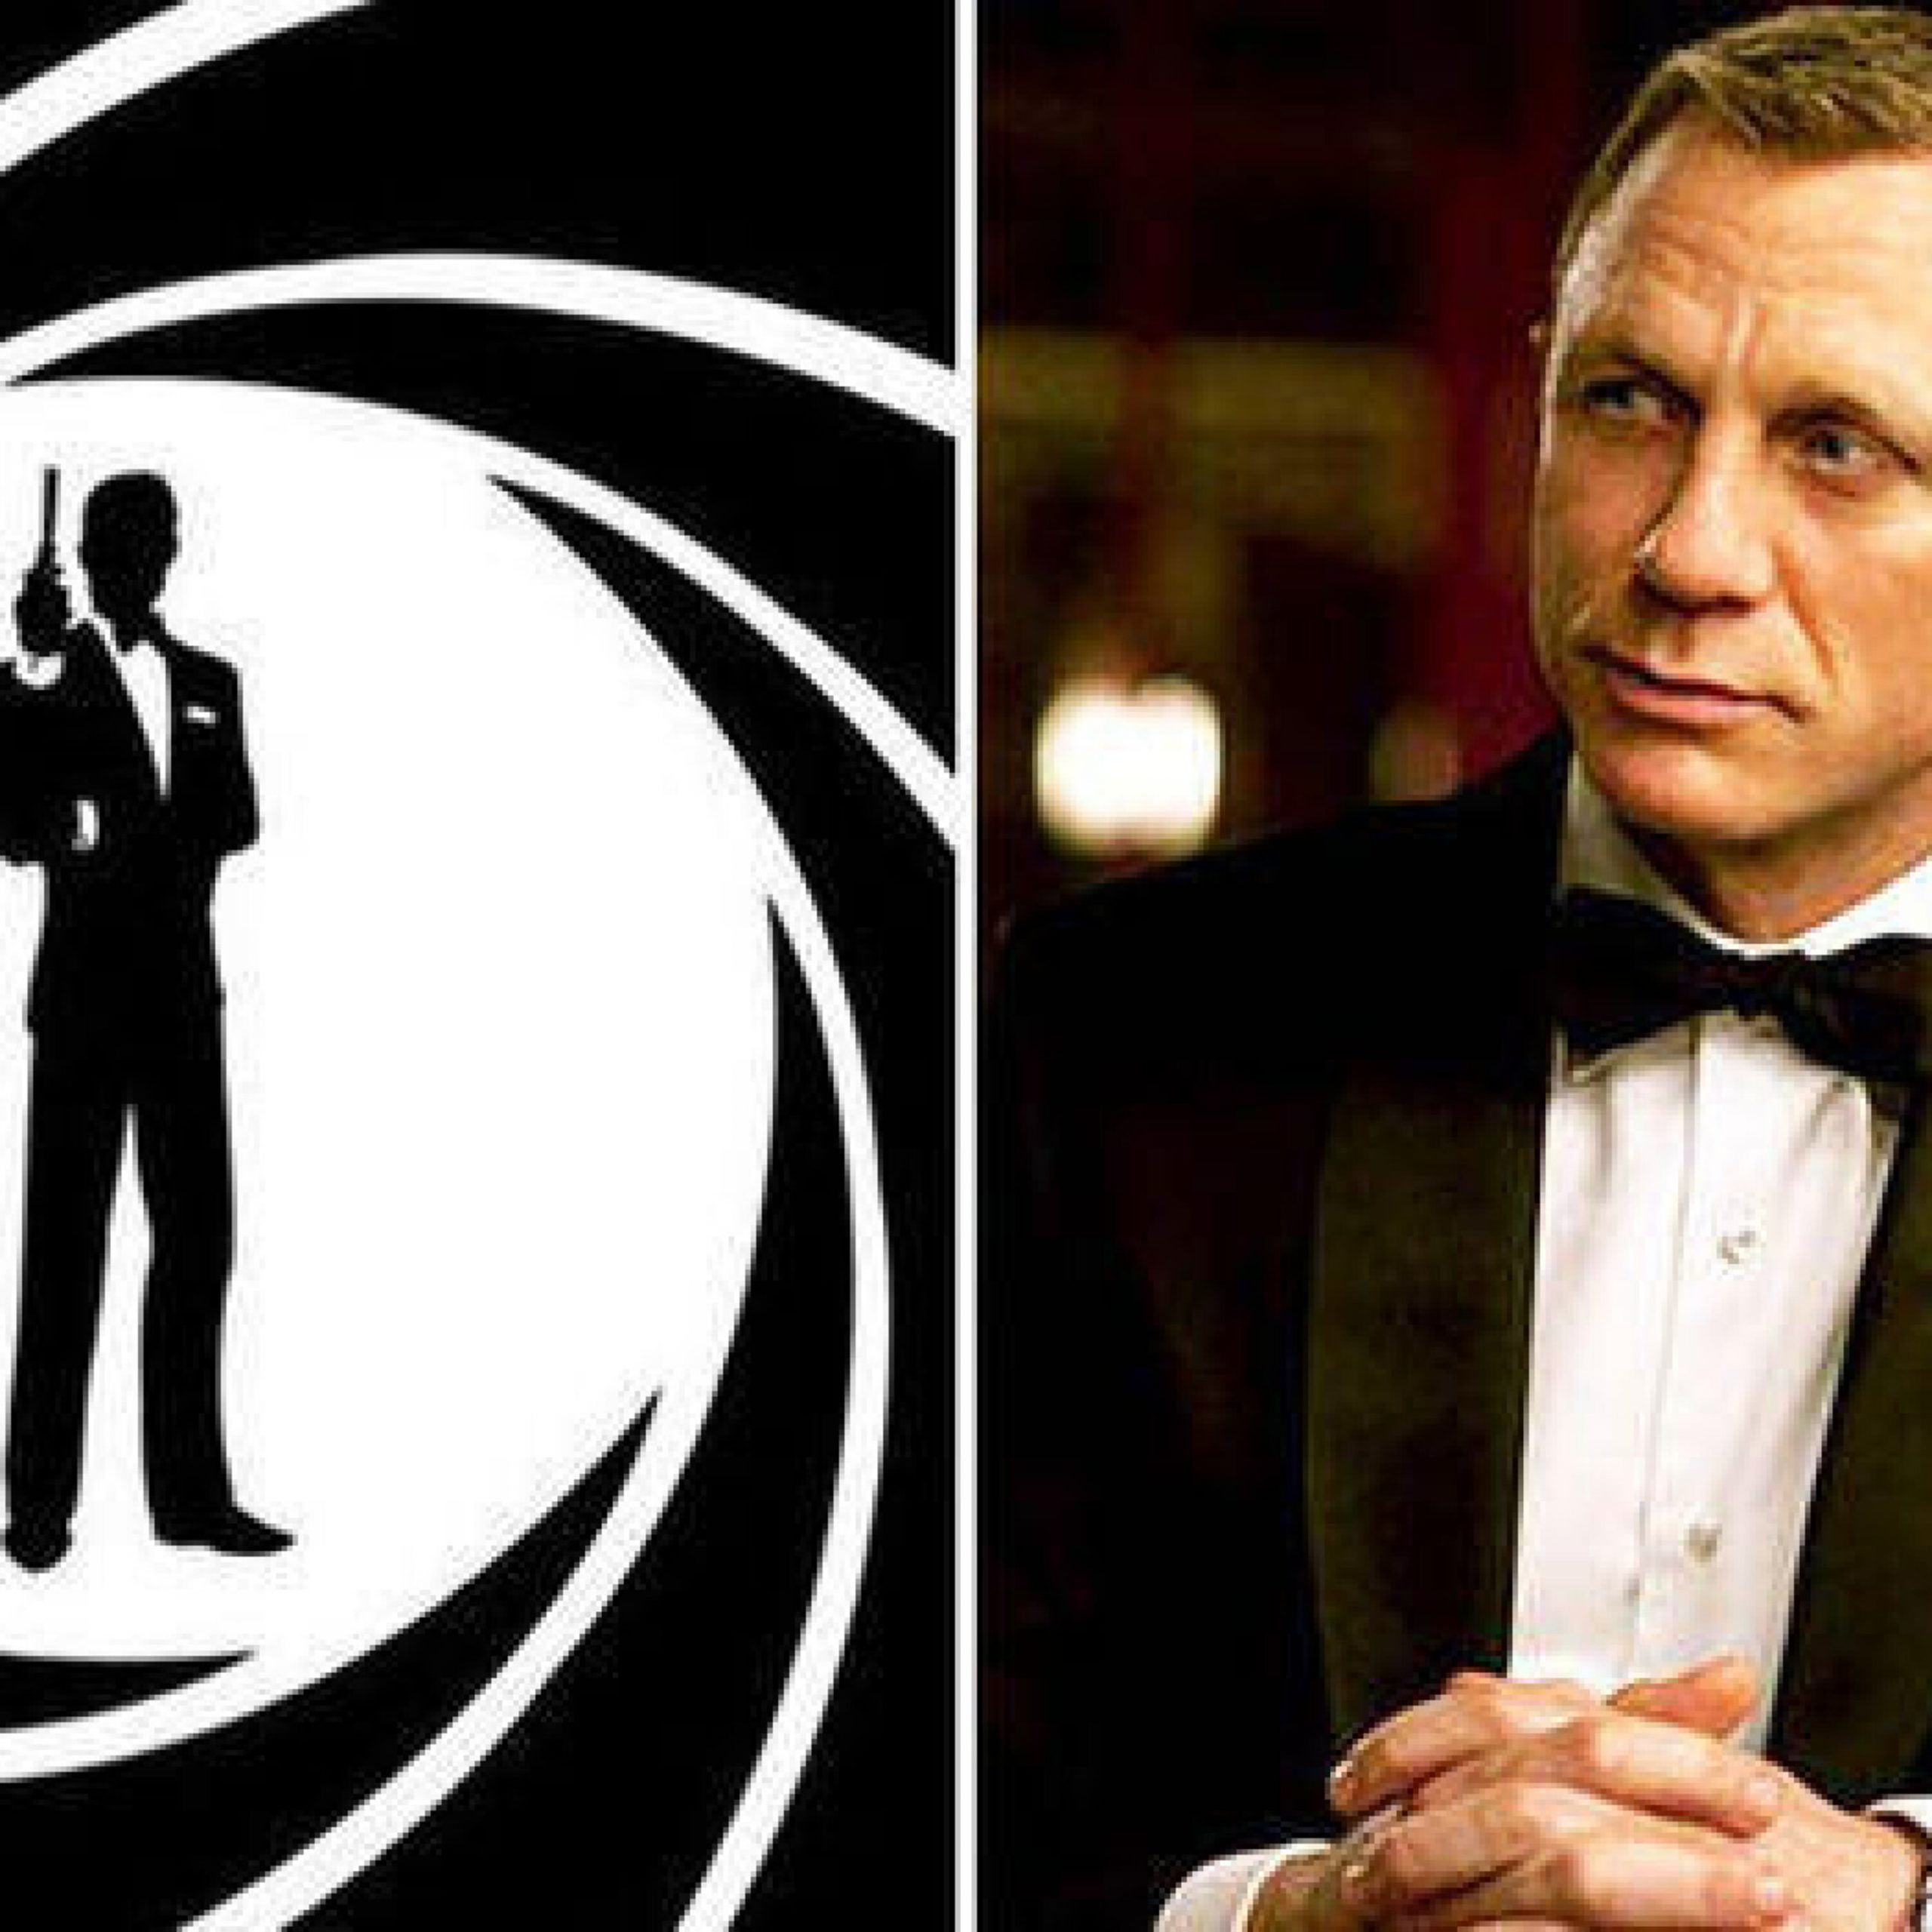 James Bond In Formula 1?